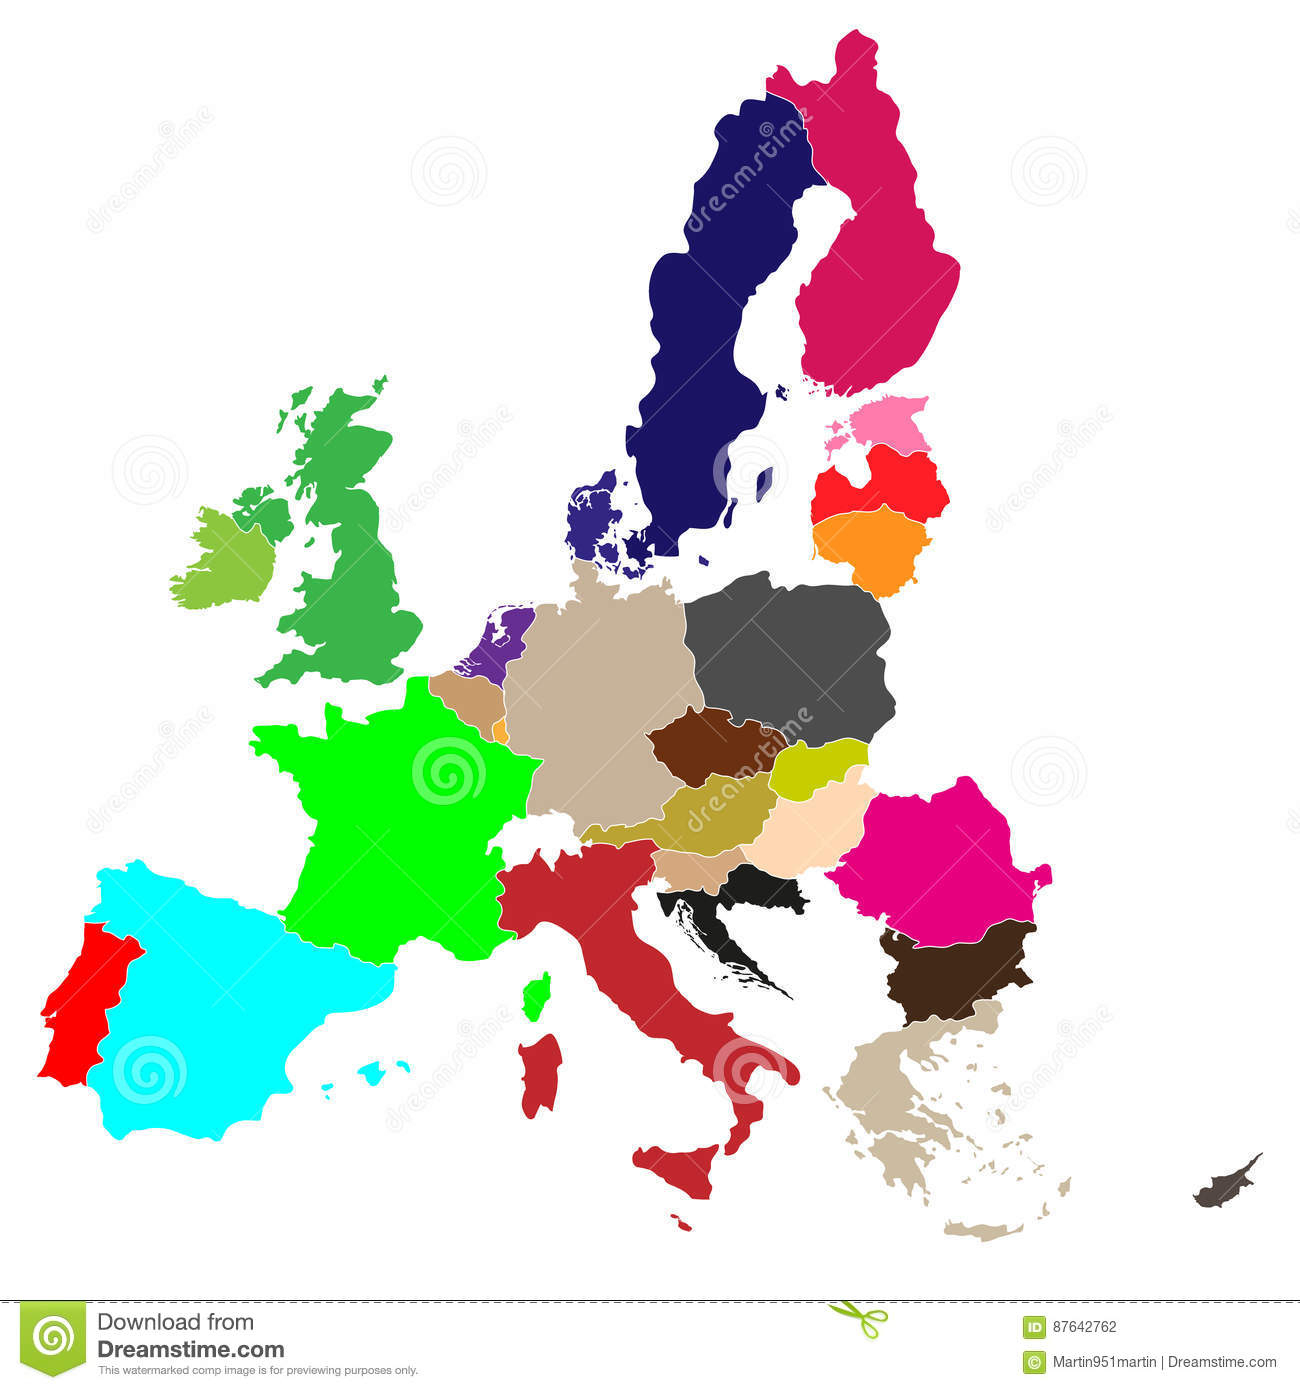 Simple Tous Les Pays De Couleur D'union Européenne Dans Une concernant Pays Union Européenne Liste